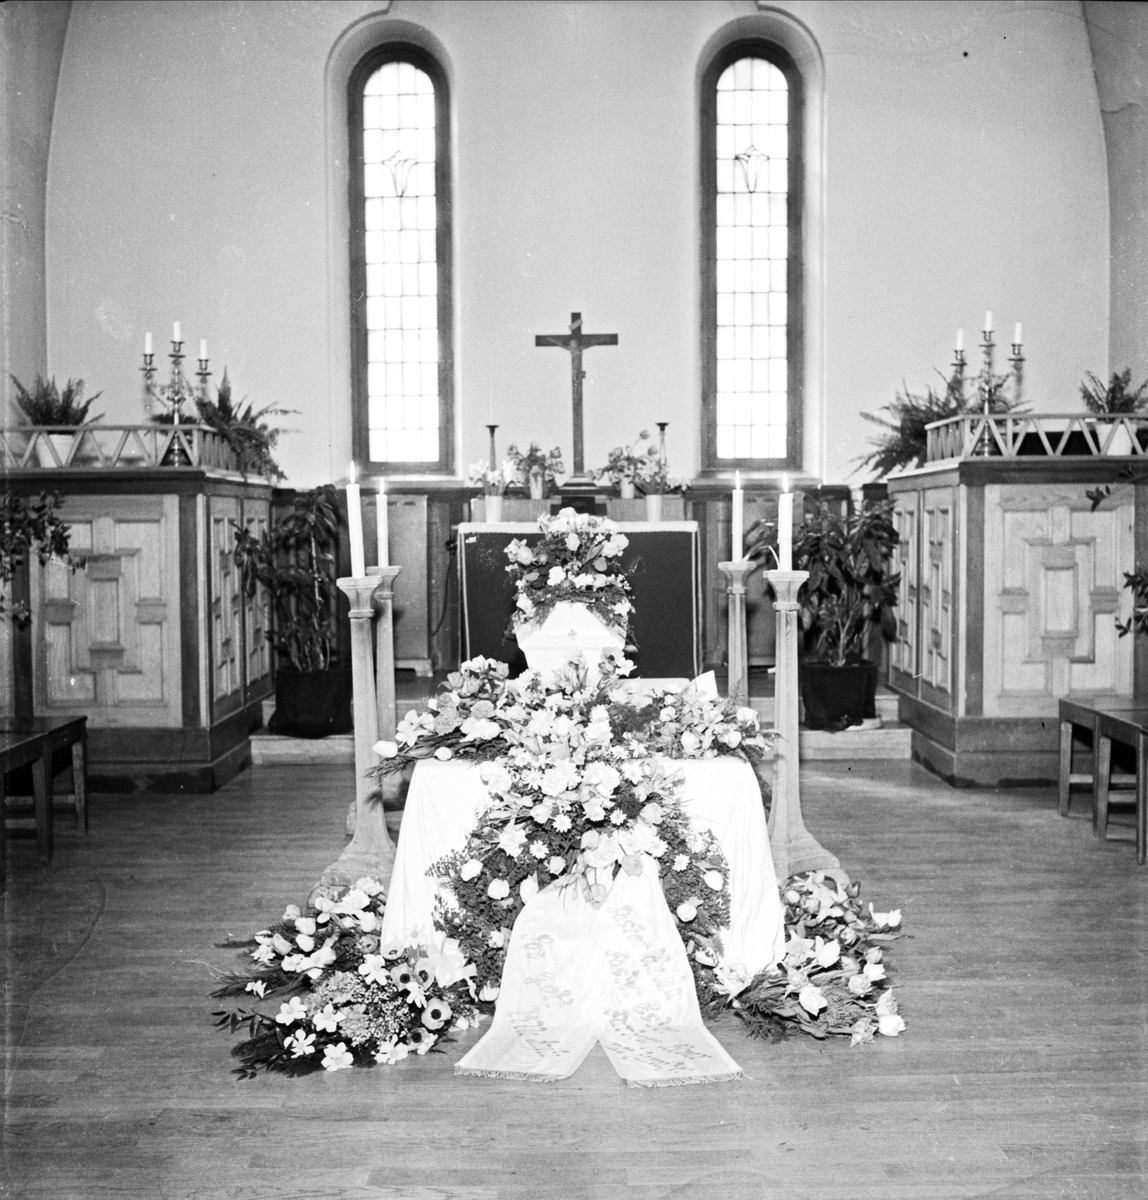 Jordfästning i kyrka, sannolikt i Uppsala 1954